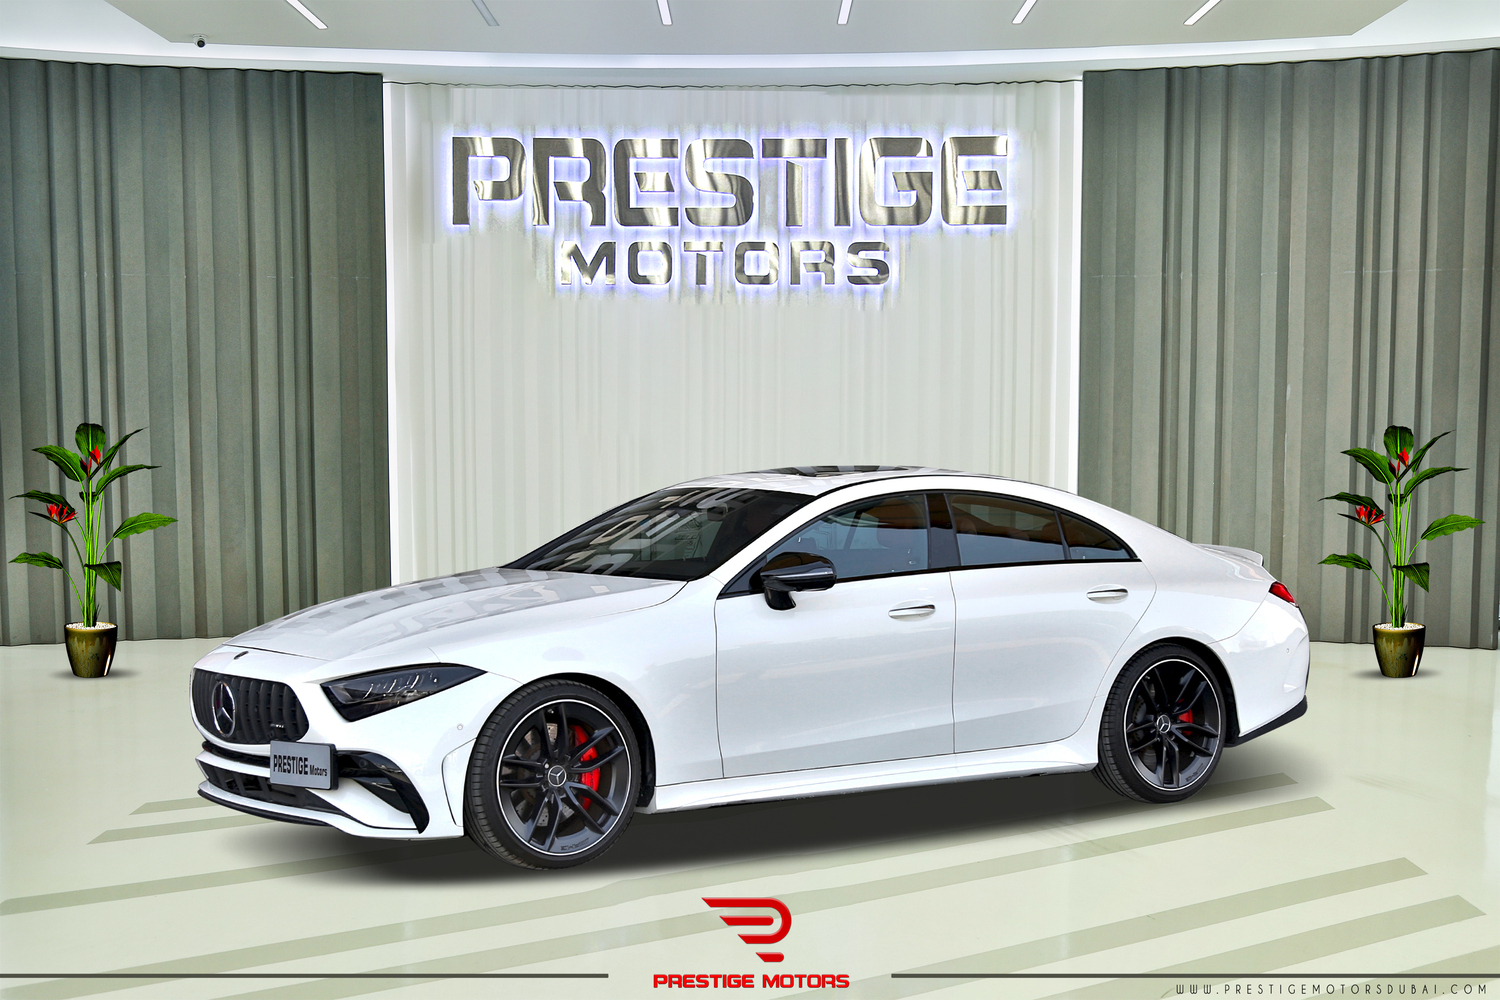 Mercedes-Benz CLS 53 AMG 4MATIC 2022 Local Registration + 10% Prestige Dubai Motor